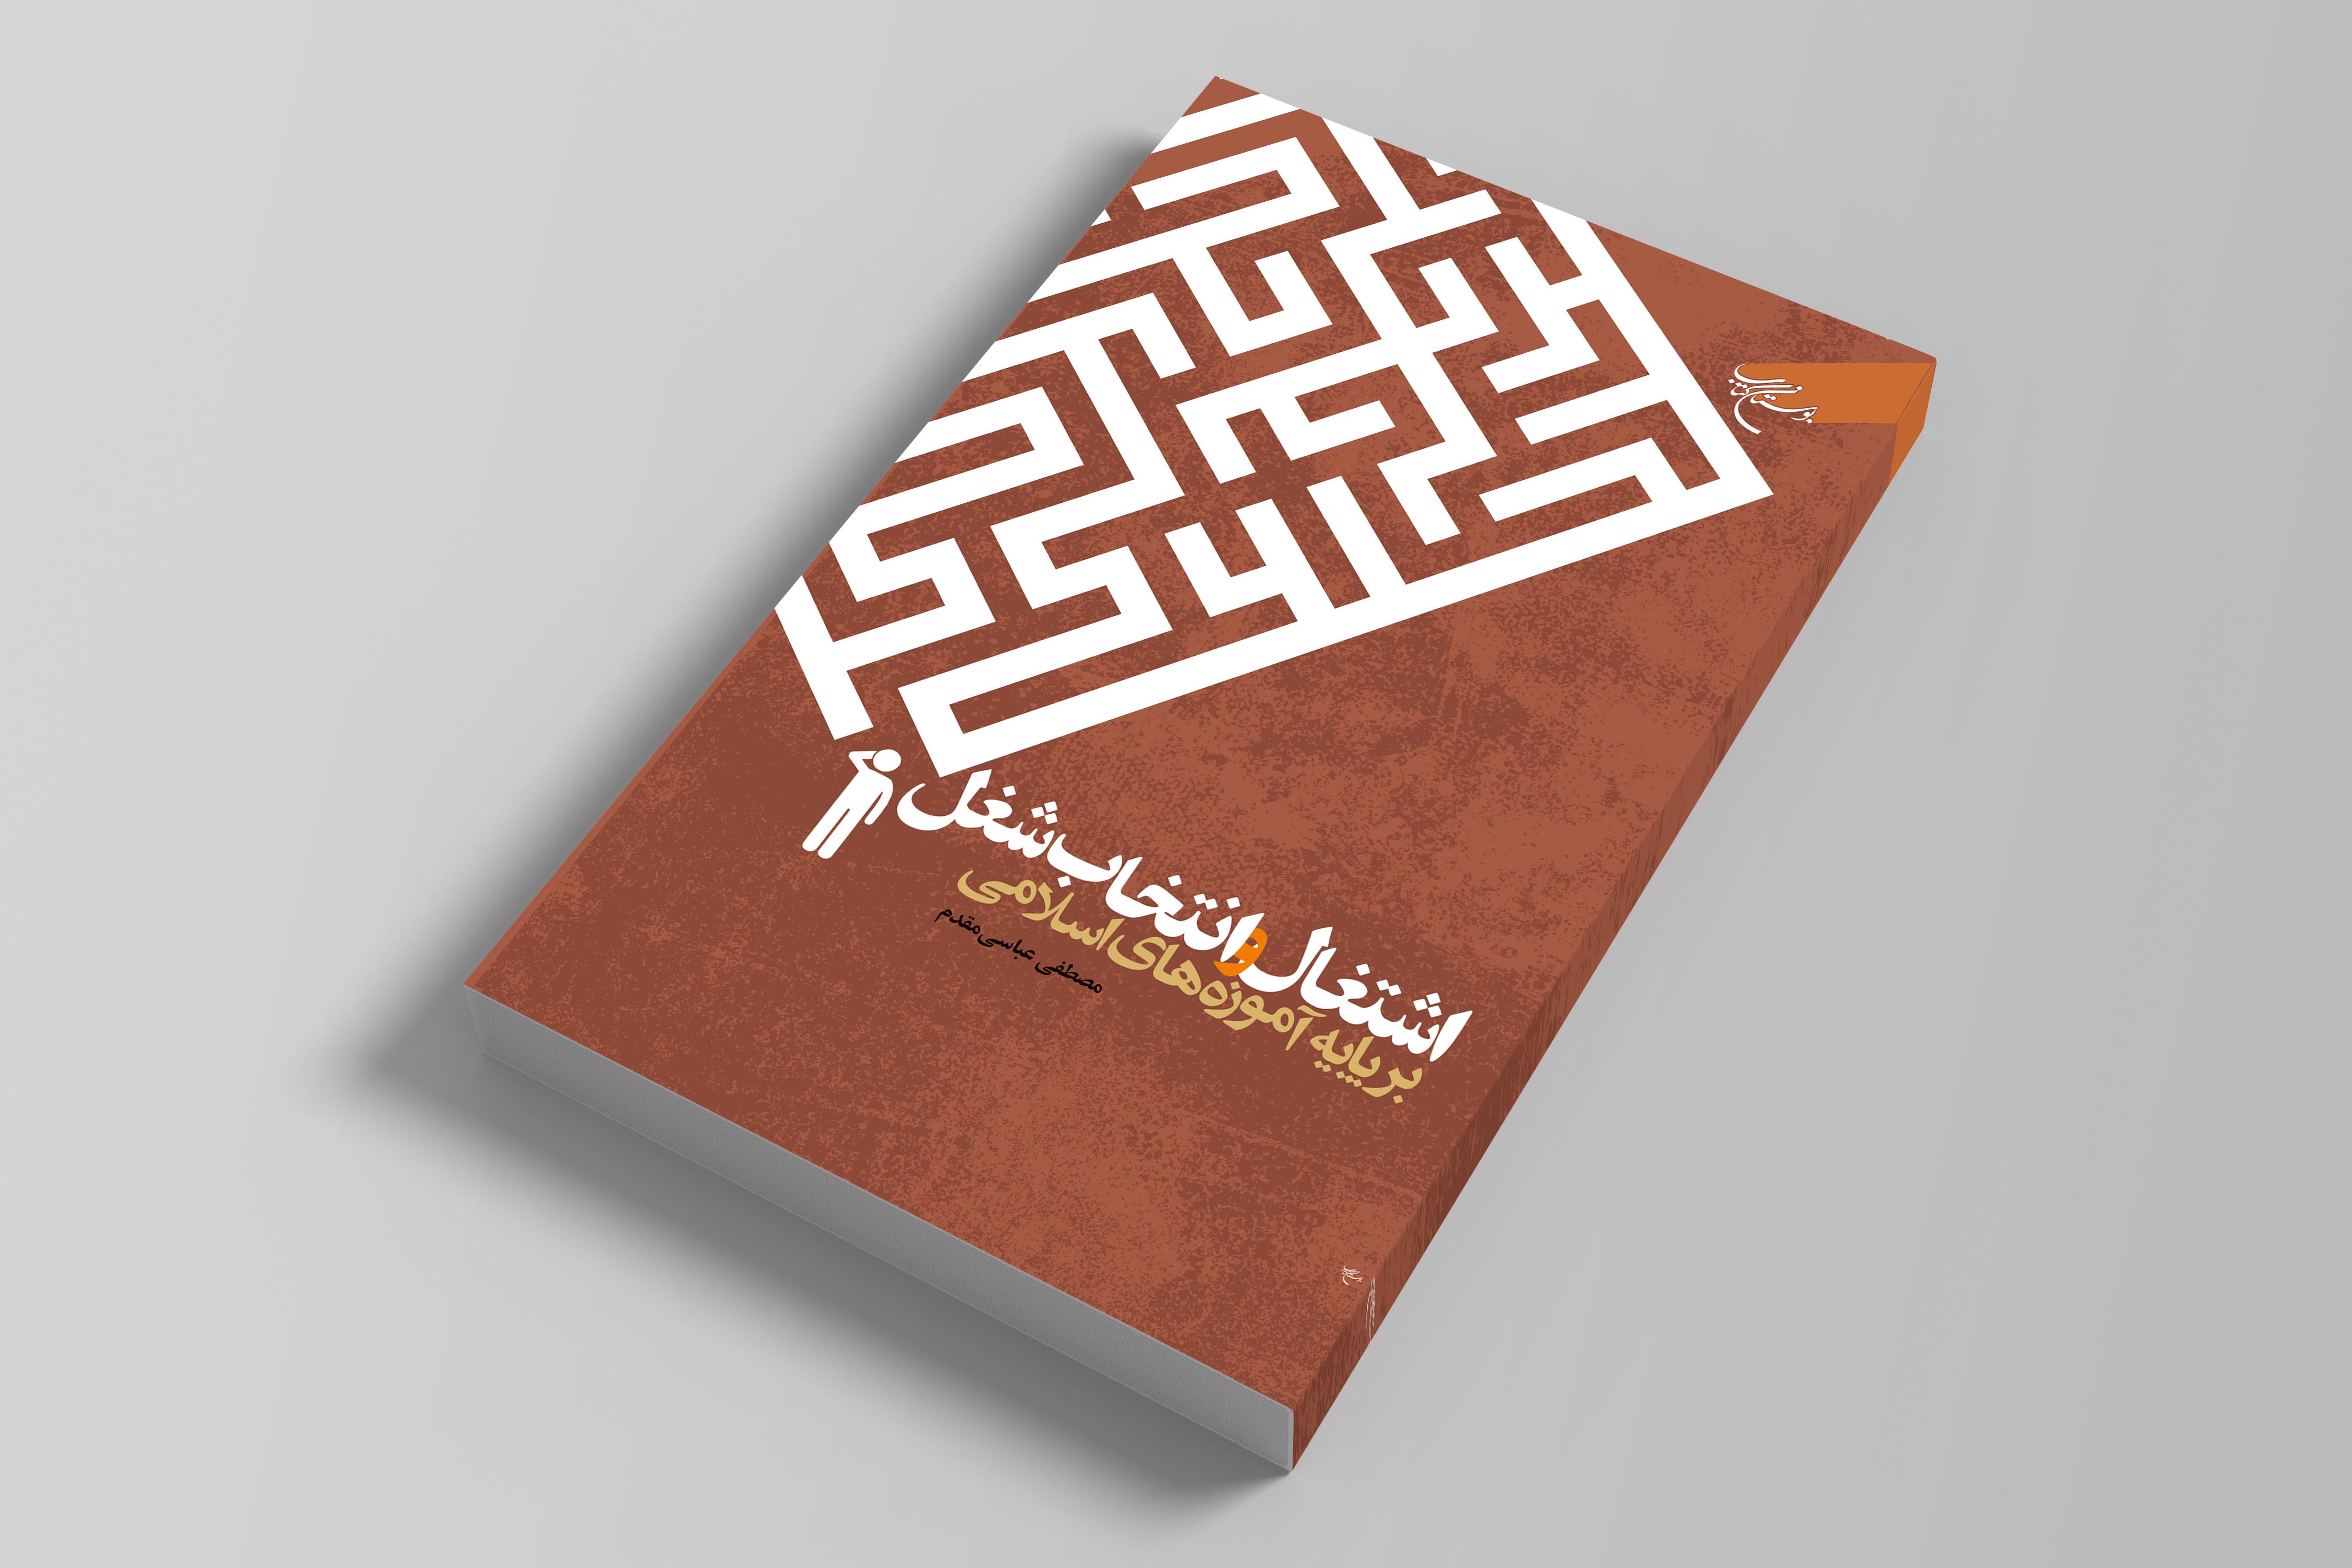 کتاب «اشتغال و انتخاب شغل بر پایه آموزه های اسلامی» روانه بازار نشر شد